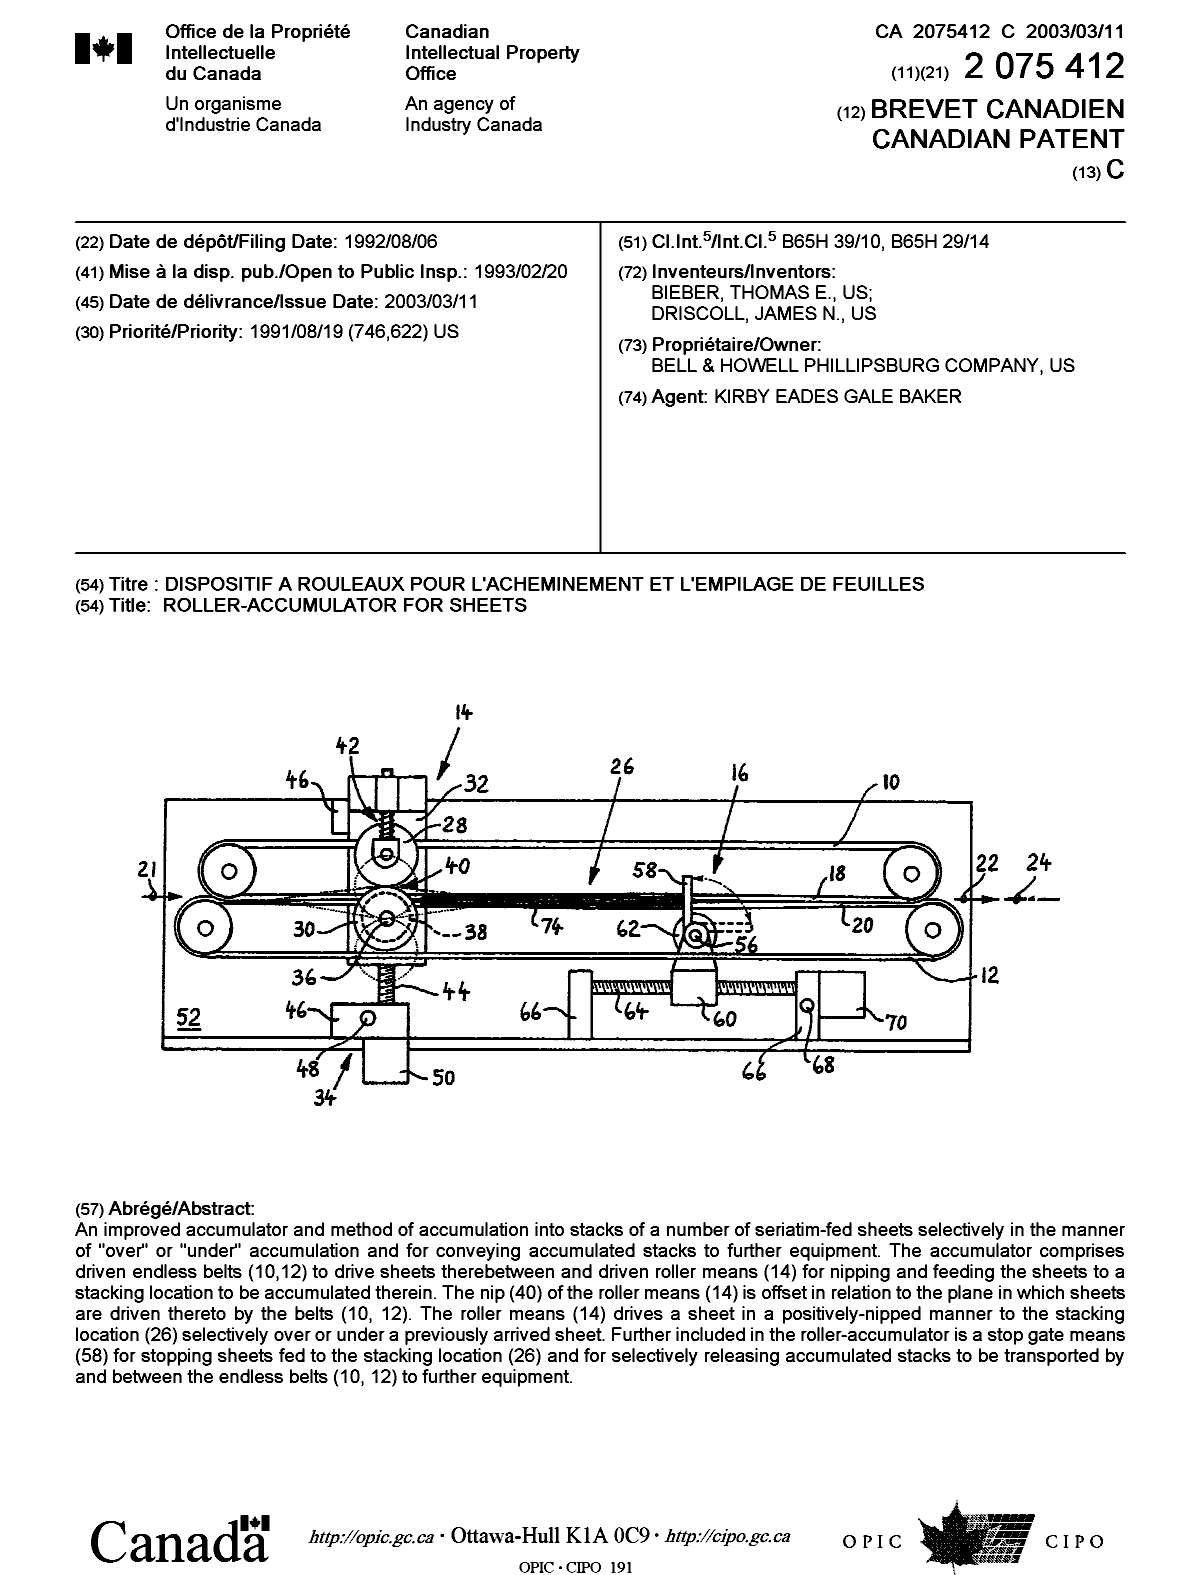 Document de brevet canadien 2075412. Page couverture 20030204. Image 1 de 1